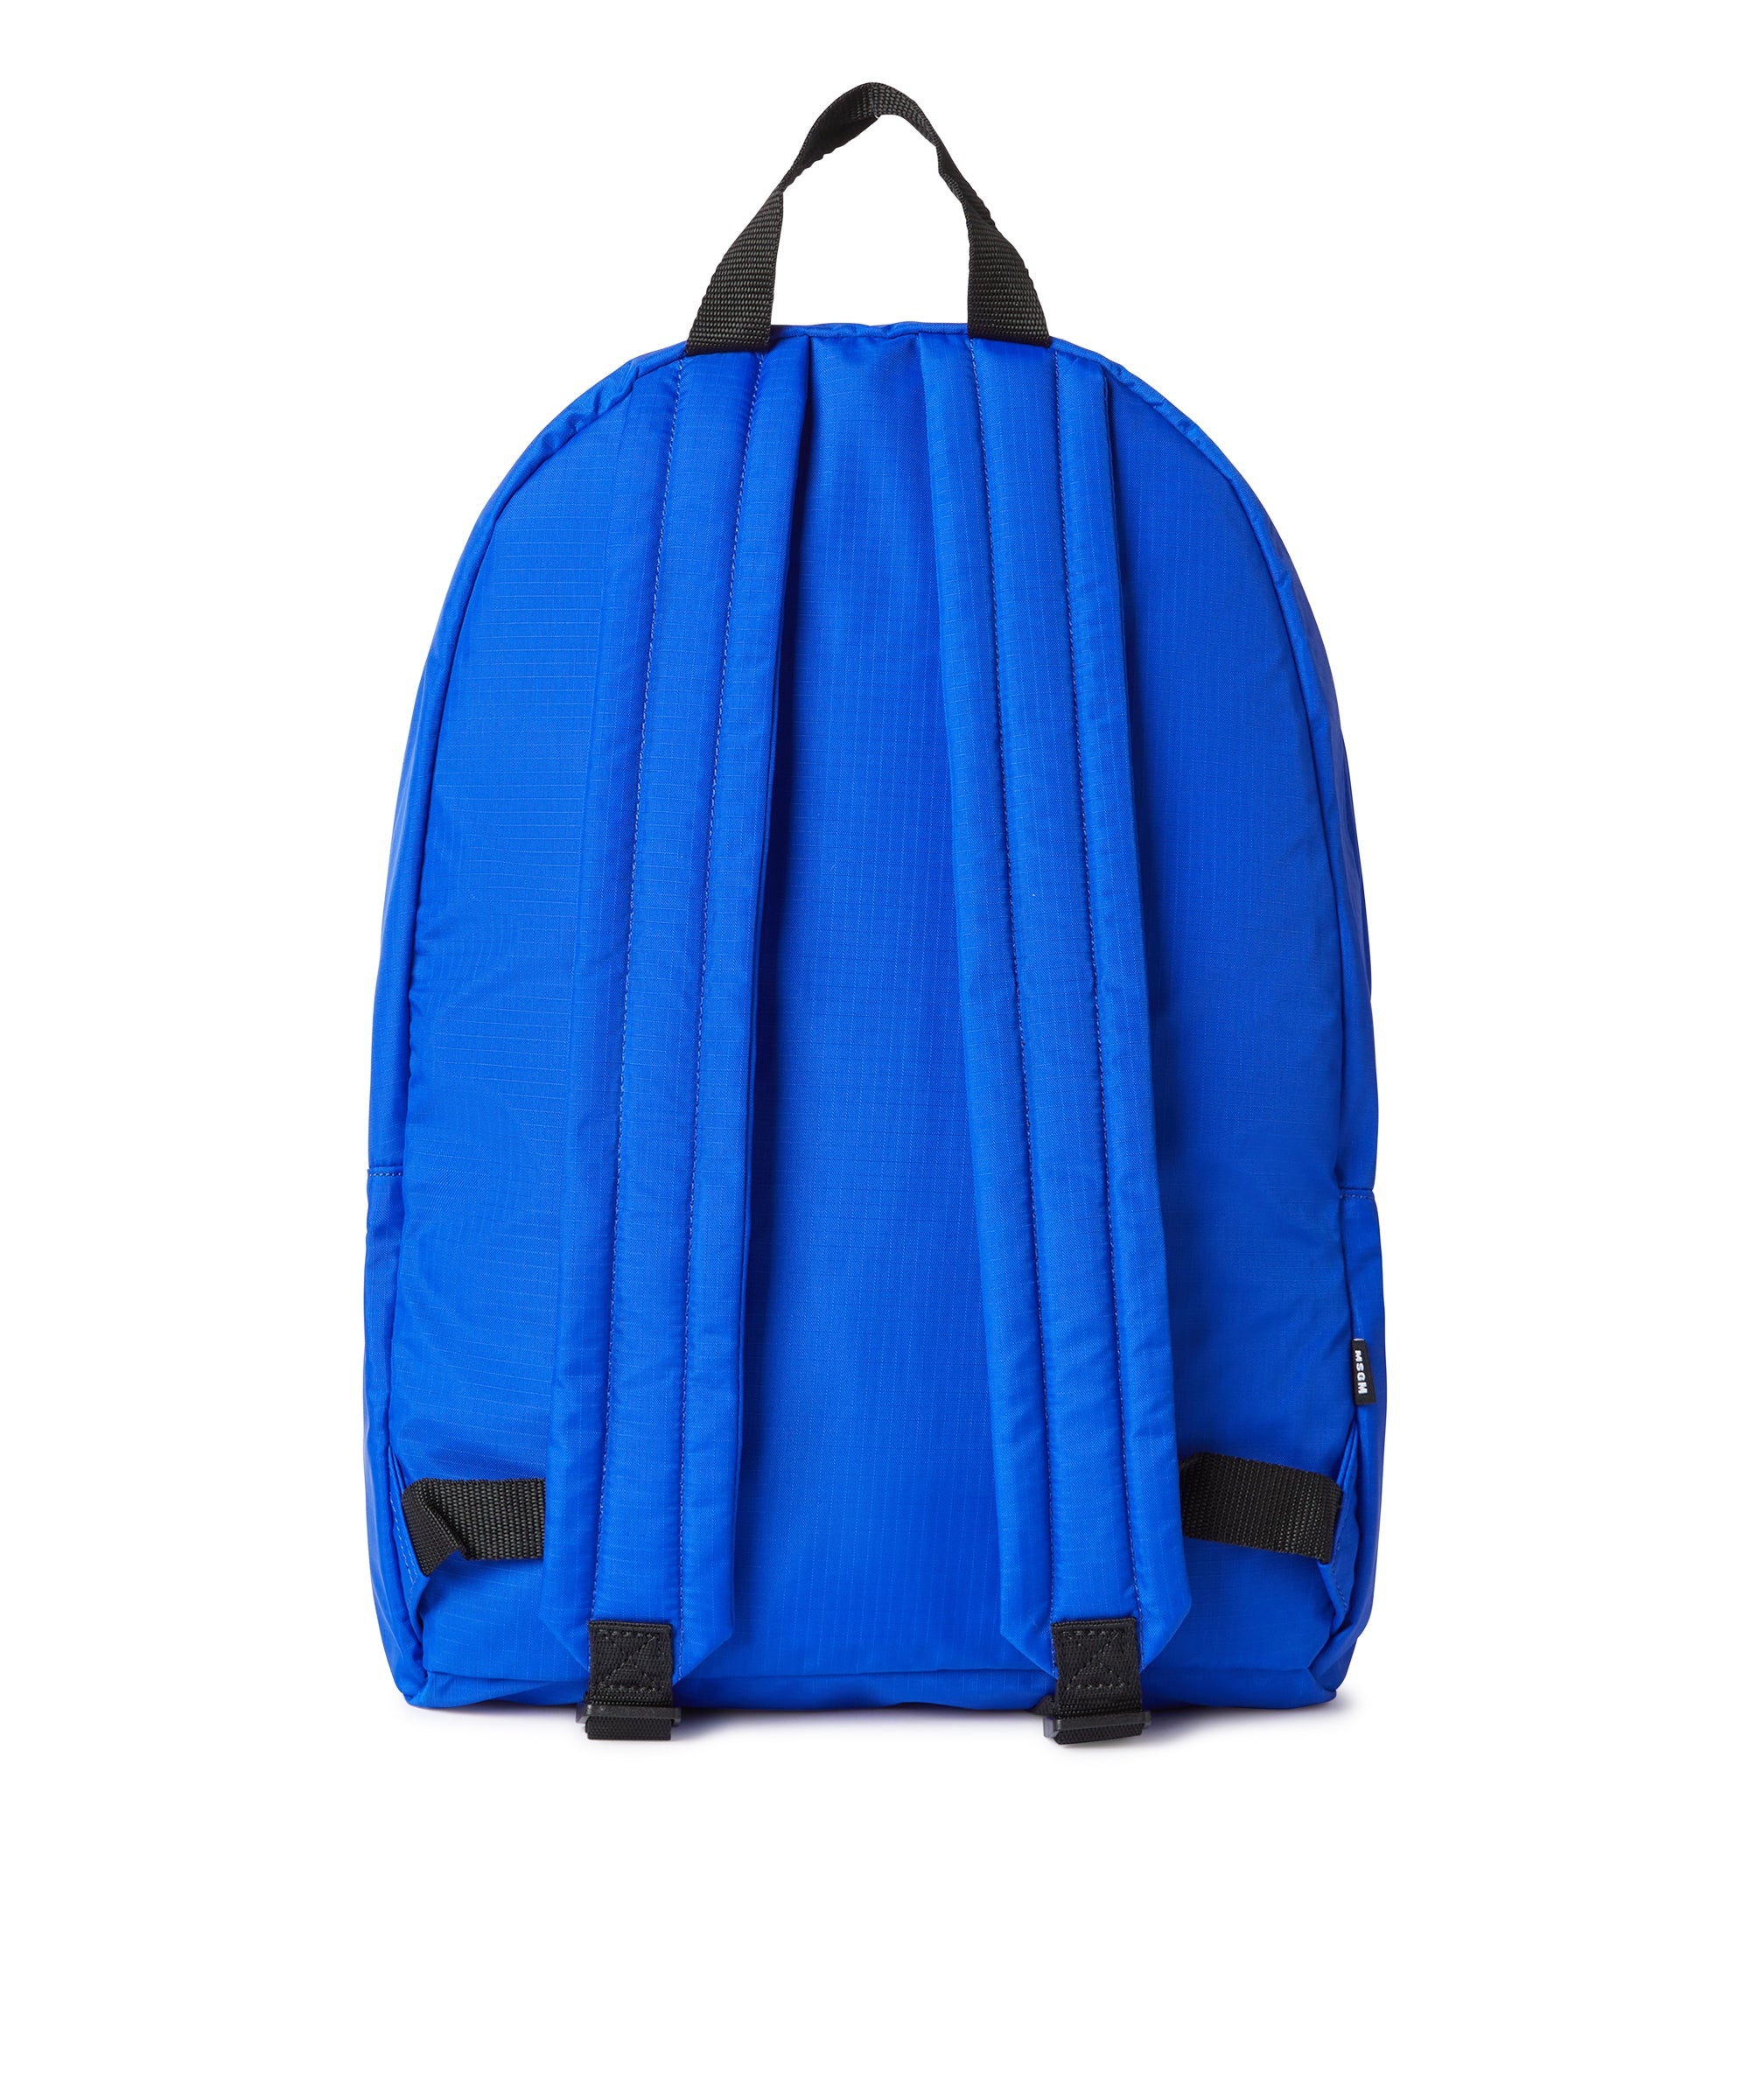 "Signature Iconic Nylon" backpack - 2